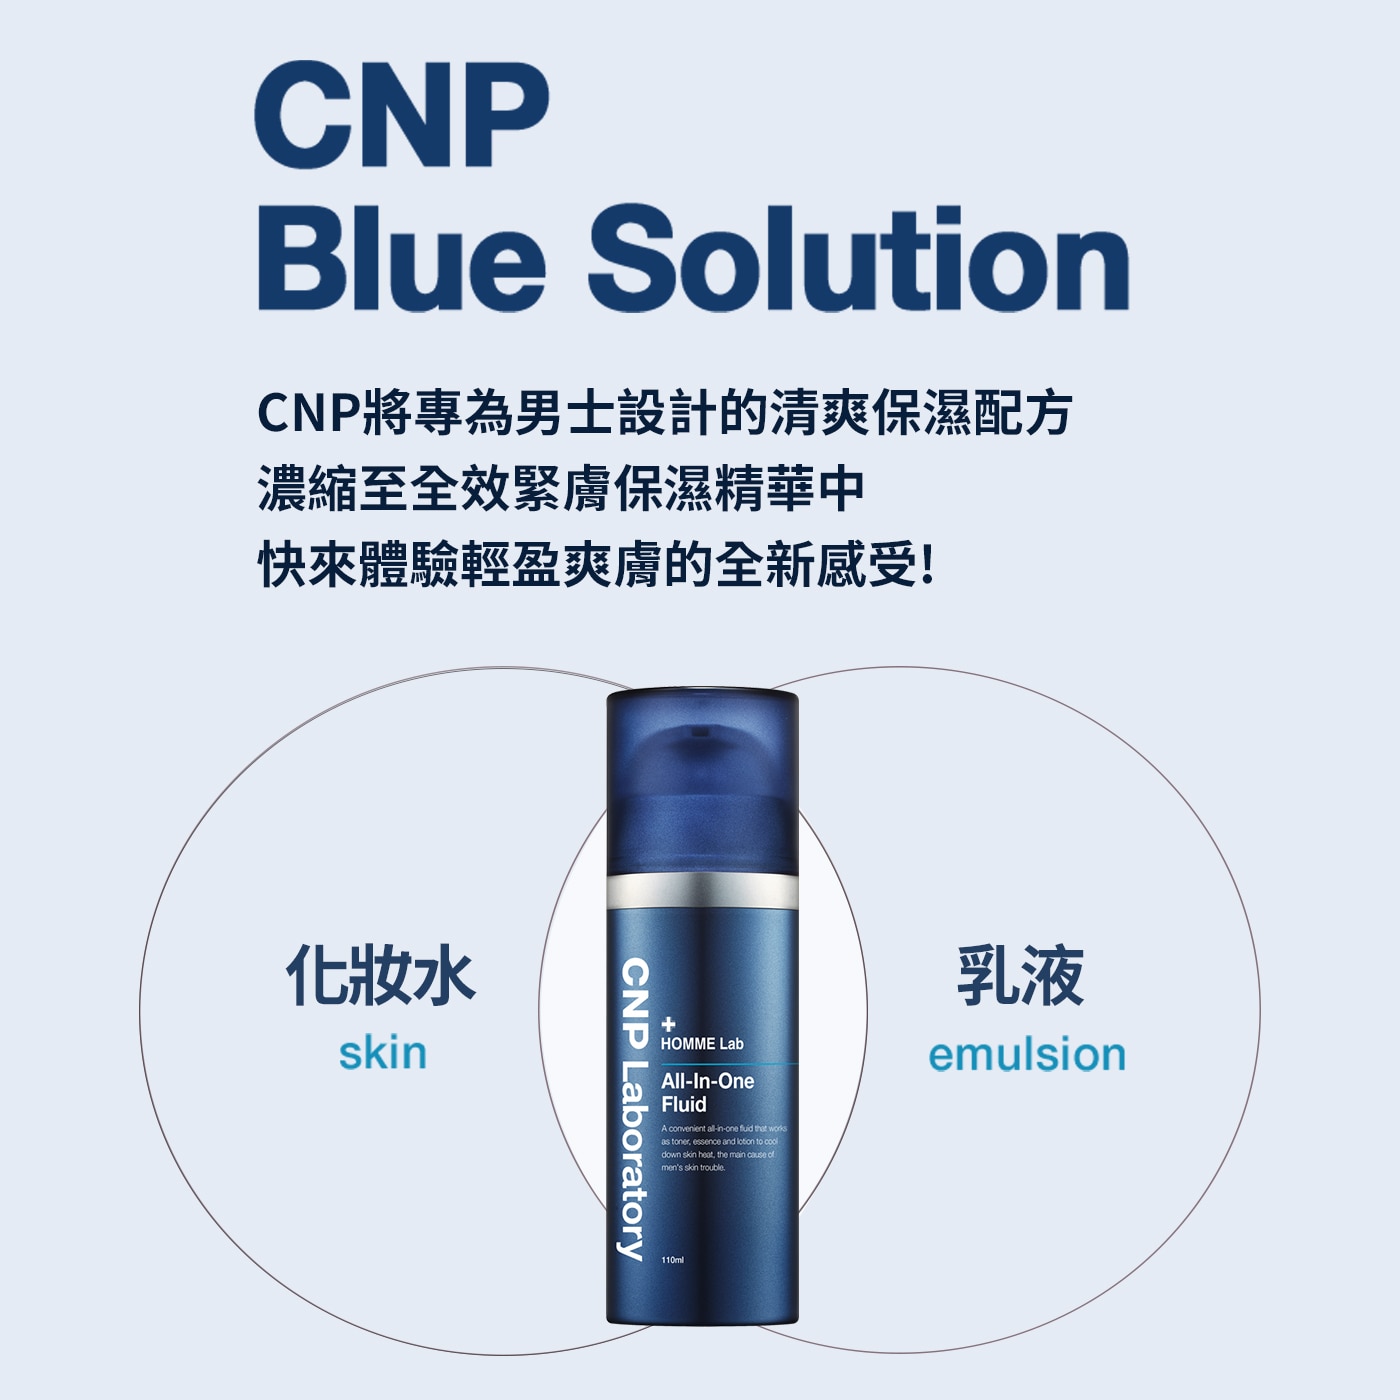 CNP 男士全效緊膚保濕精華組，修護肌膚根本問題，清爽保濕提亮膚色。